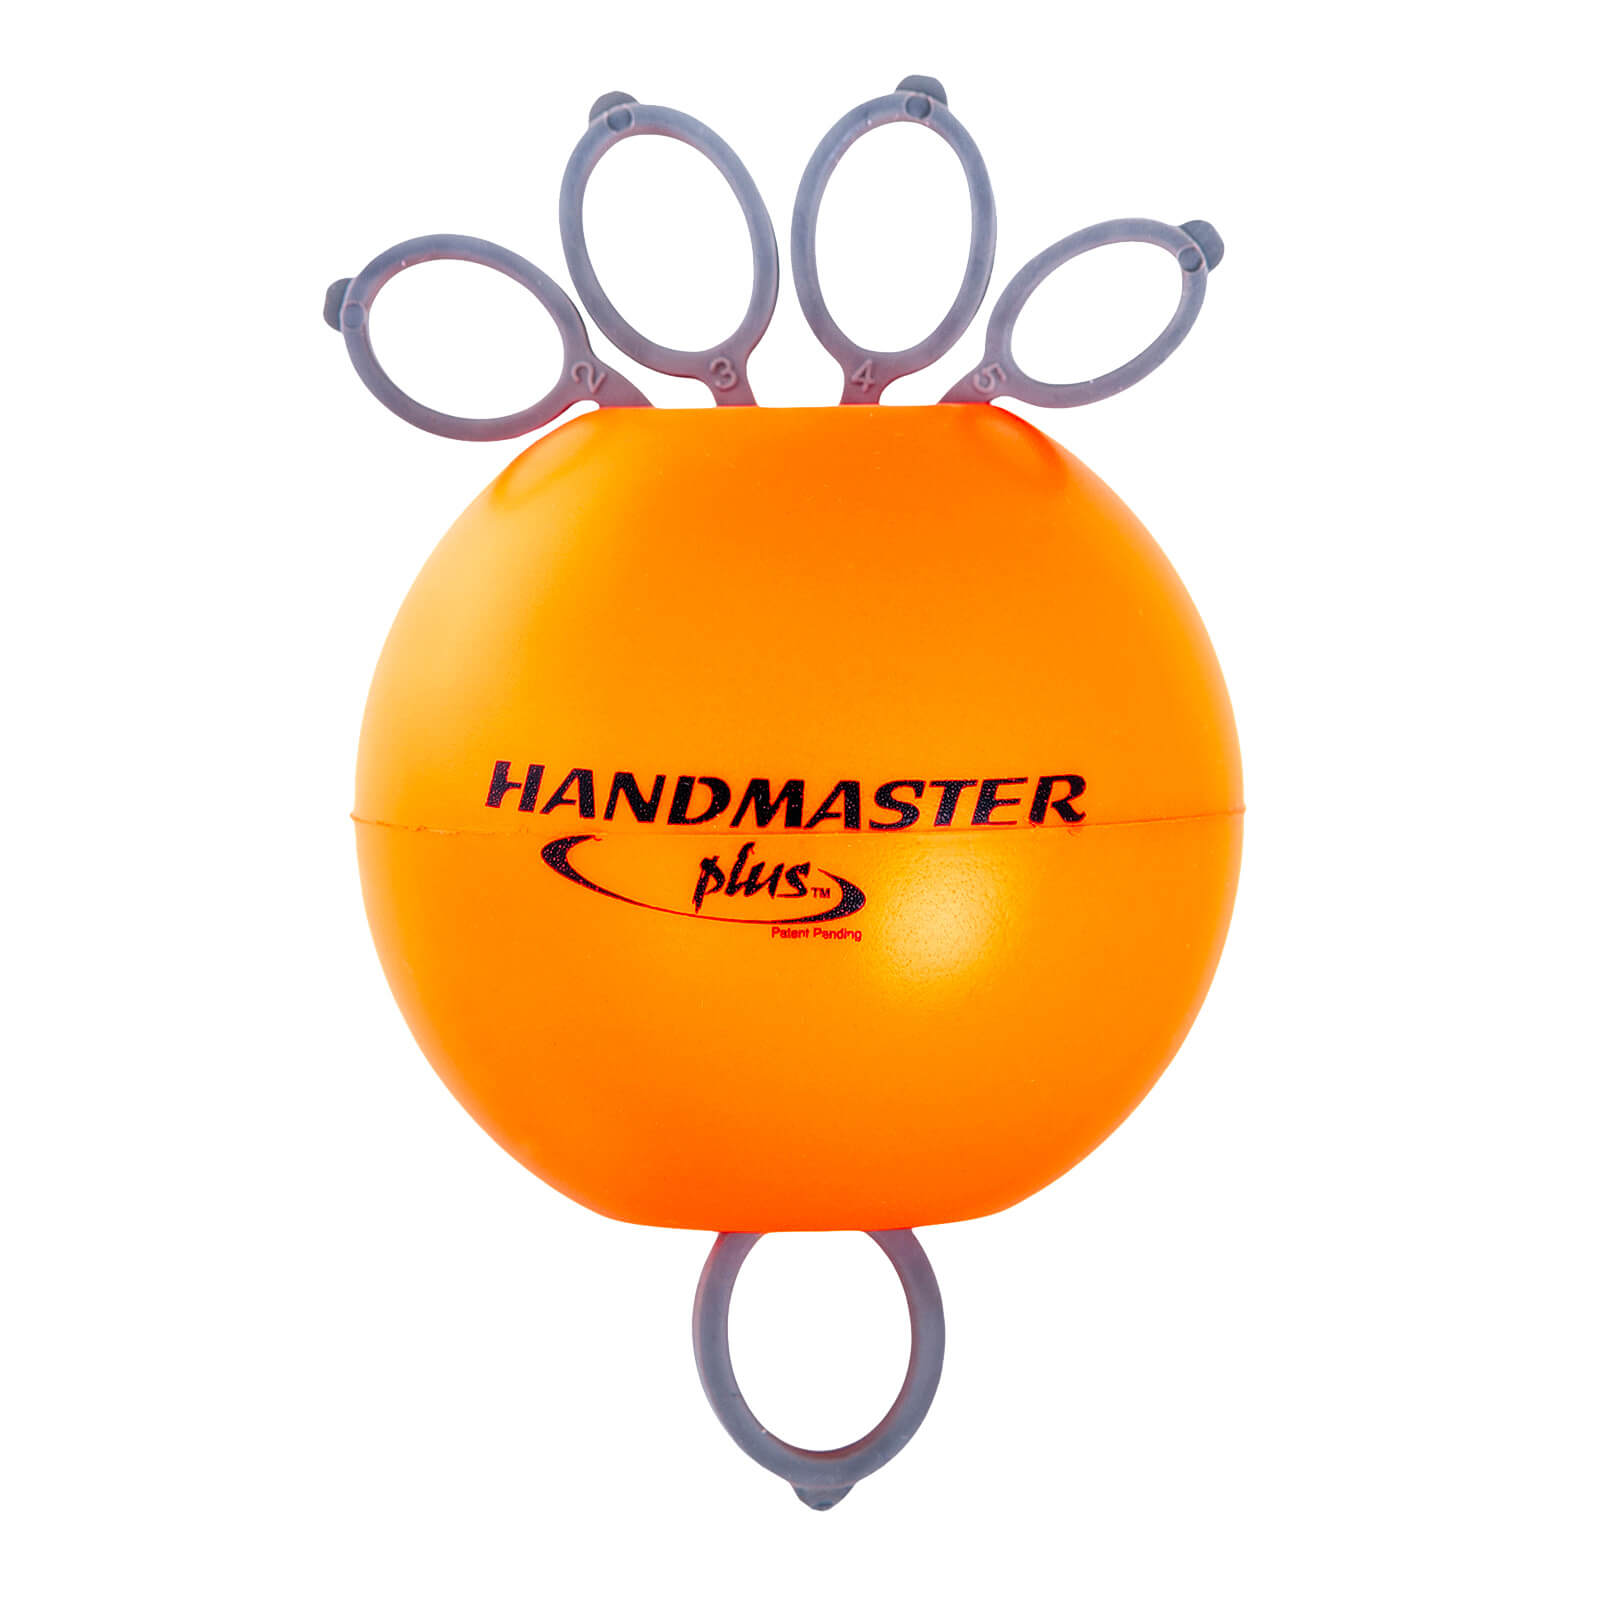 Handmaster Plus - Orange et gris - Ferme